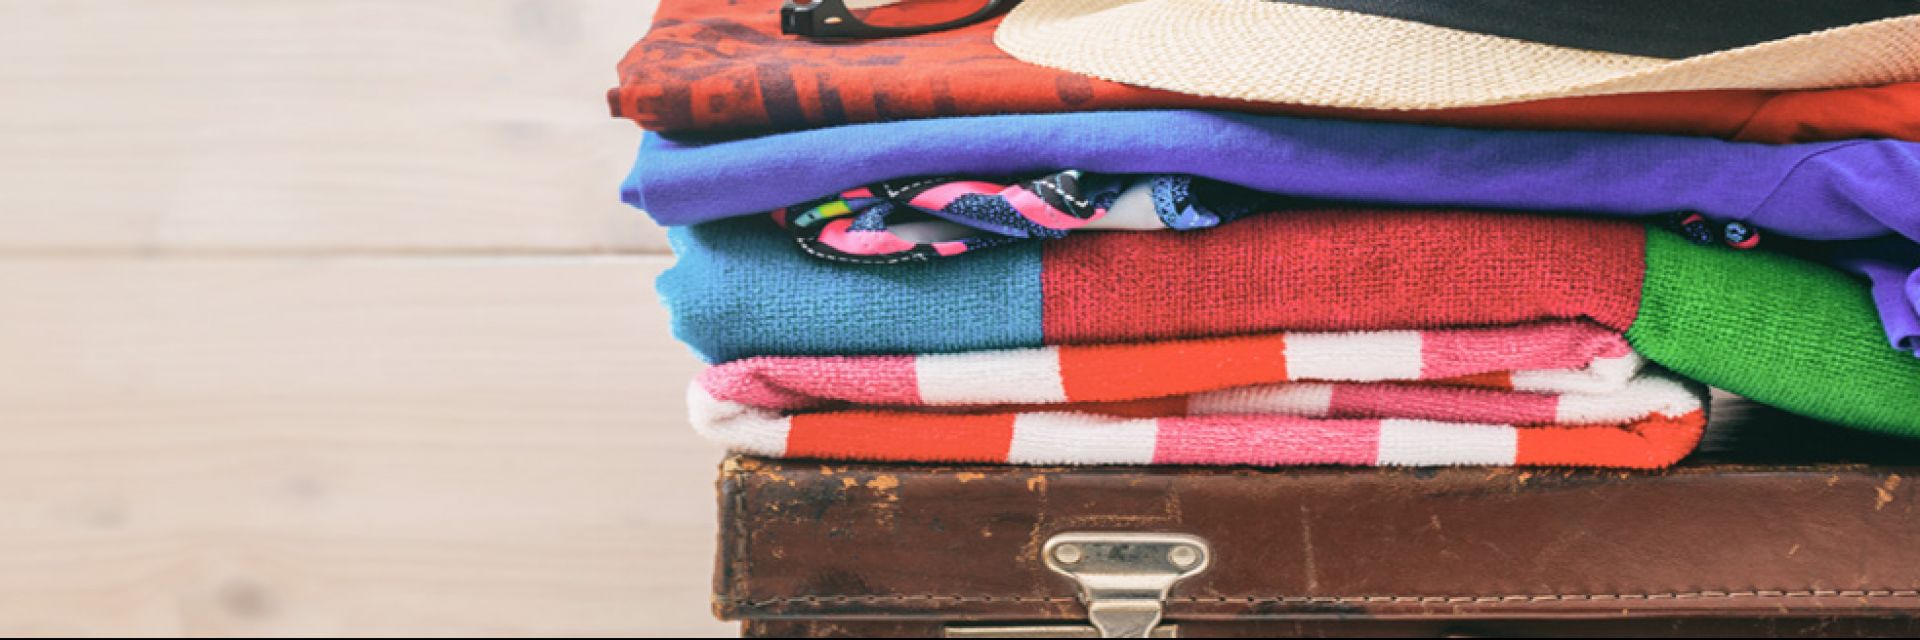 Cinco dicas de como arrumar mala para sua viagem de férias